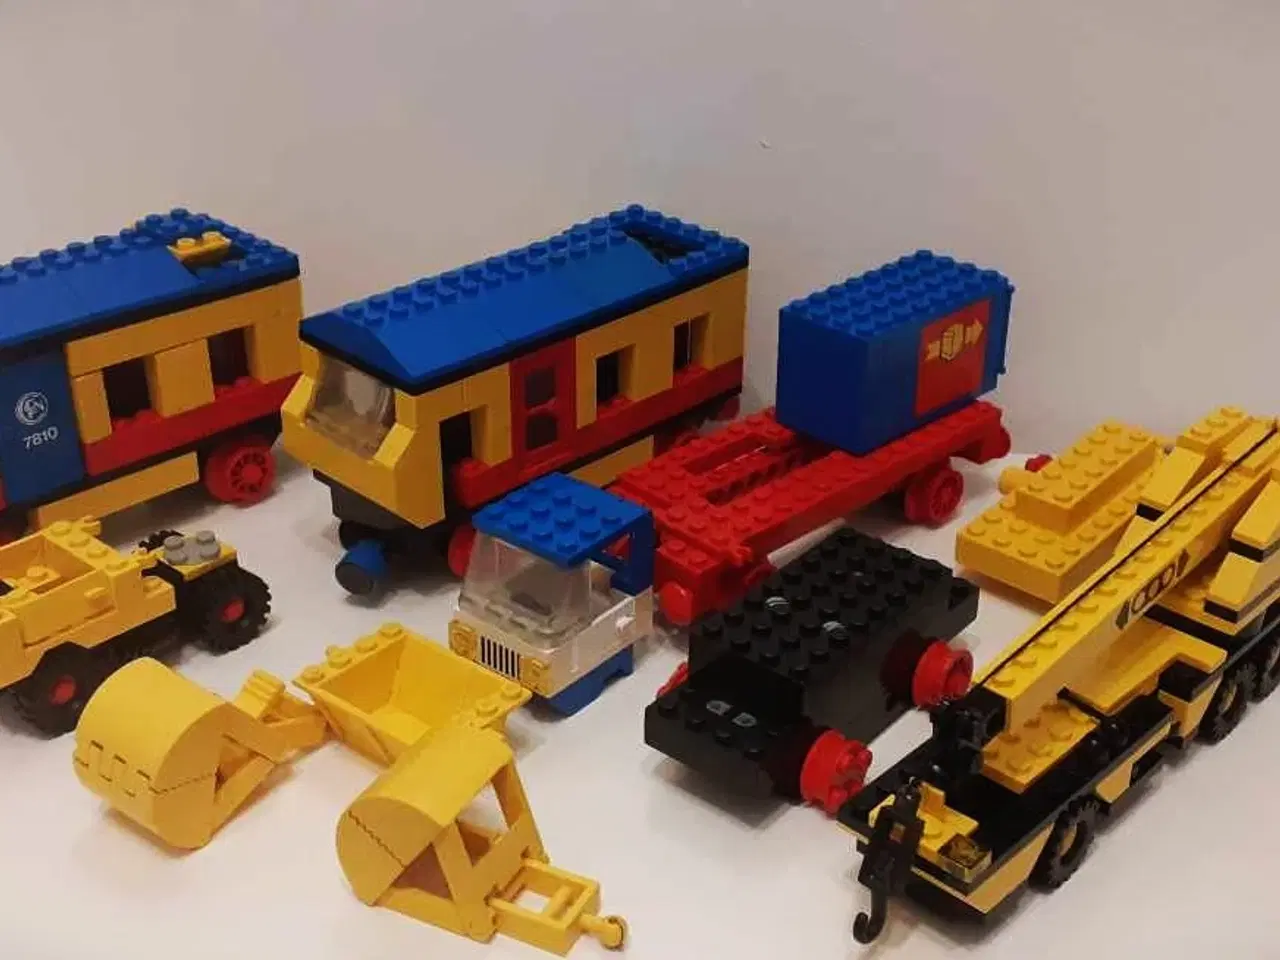 Billede 1 - LEGO tog, stor kranbil, motorenhed med hjul m.m.